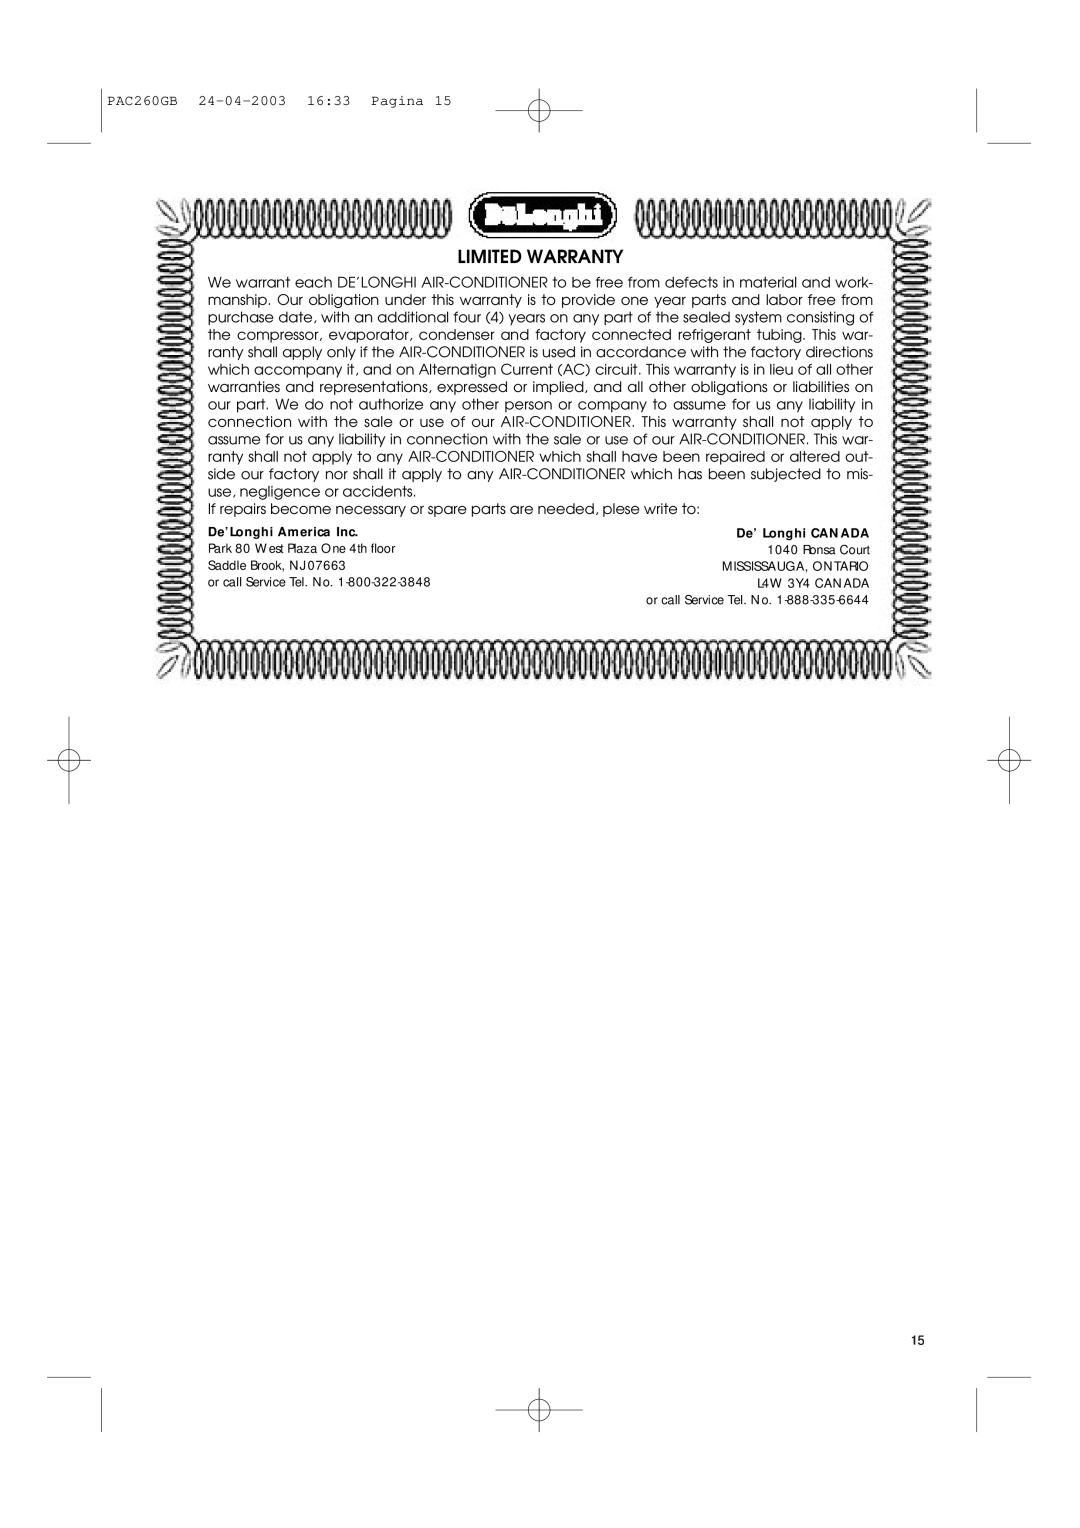 DeLonghi PAC260 manual Limited Warranty, De’Longhi America Inc, De’ Longhi CANADA 